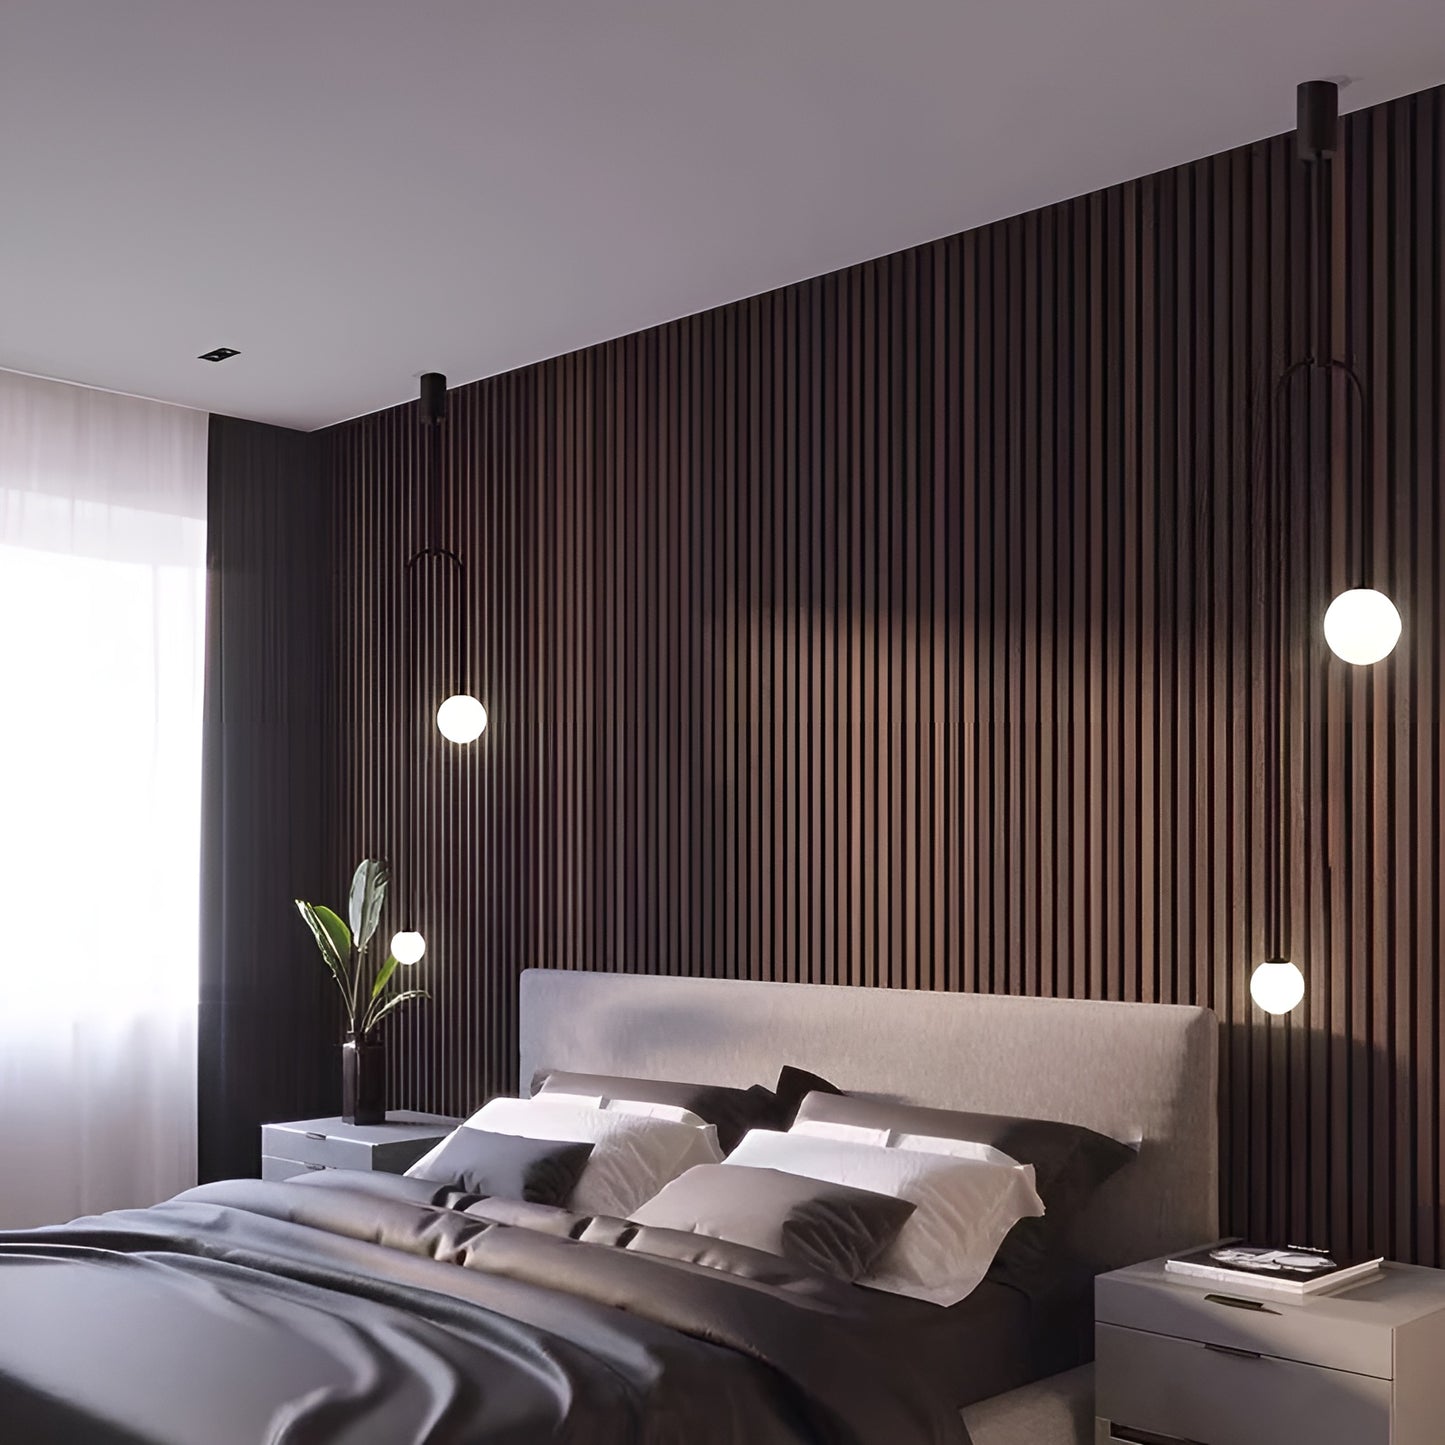 Sleek Dual Orb Pendant Light - Modern Minimalist Bedroom Accent Light